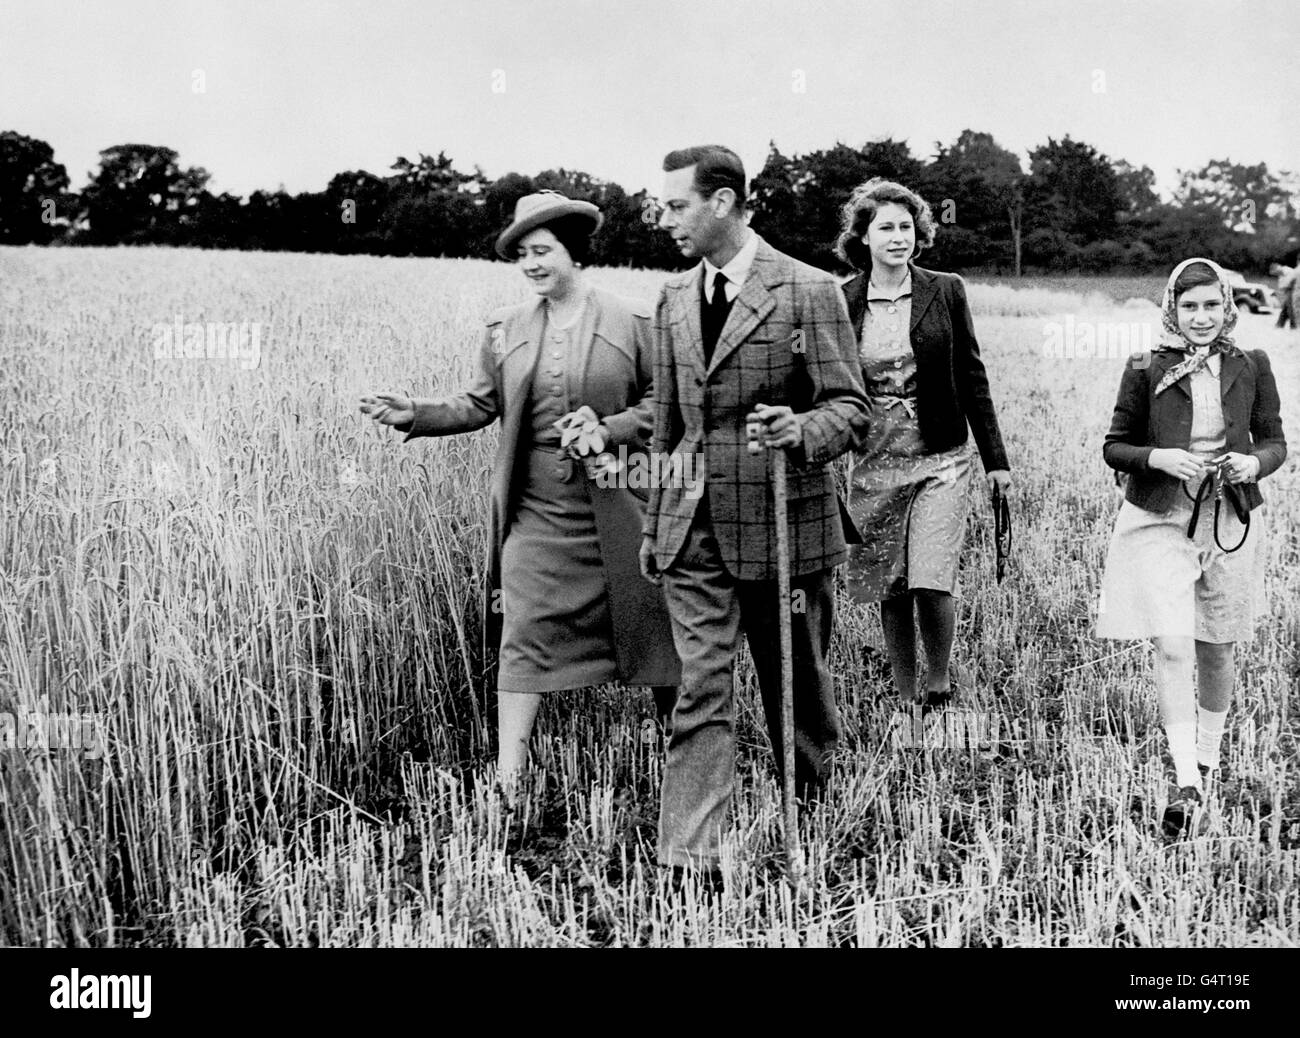 Loin des troubles de la Seconde Guerre mondiale, le roi George VI et la reine Elizabeth marchent dans un champ avec leurs filles, la princesse Elizabeth et la princesse Margaret (à droite). Banque D'Images